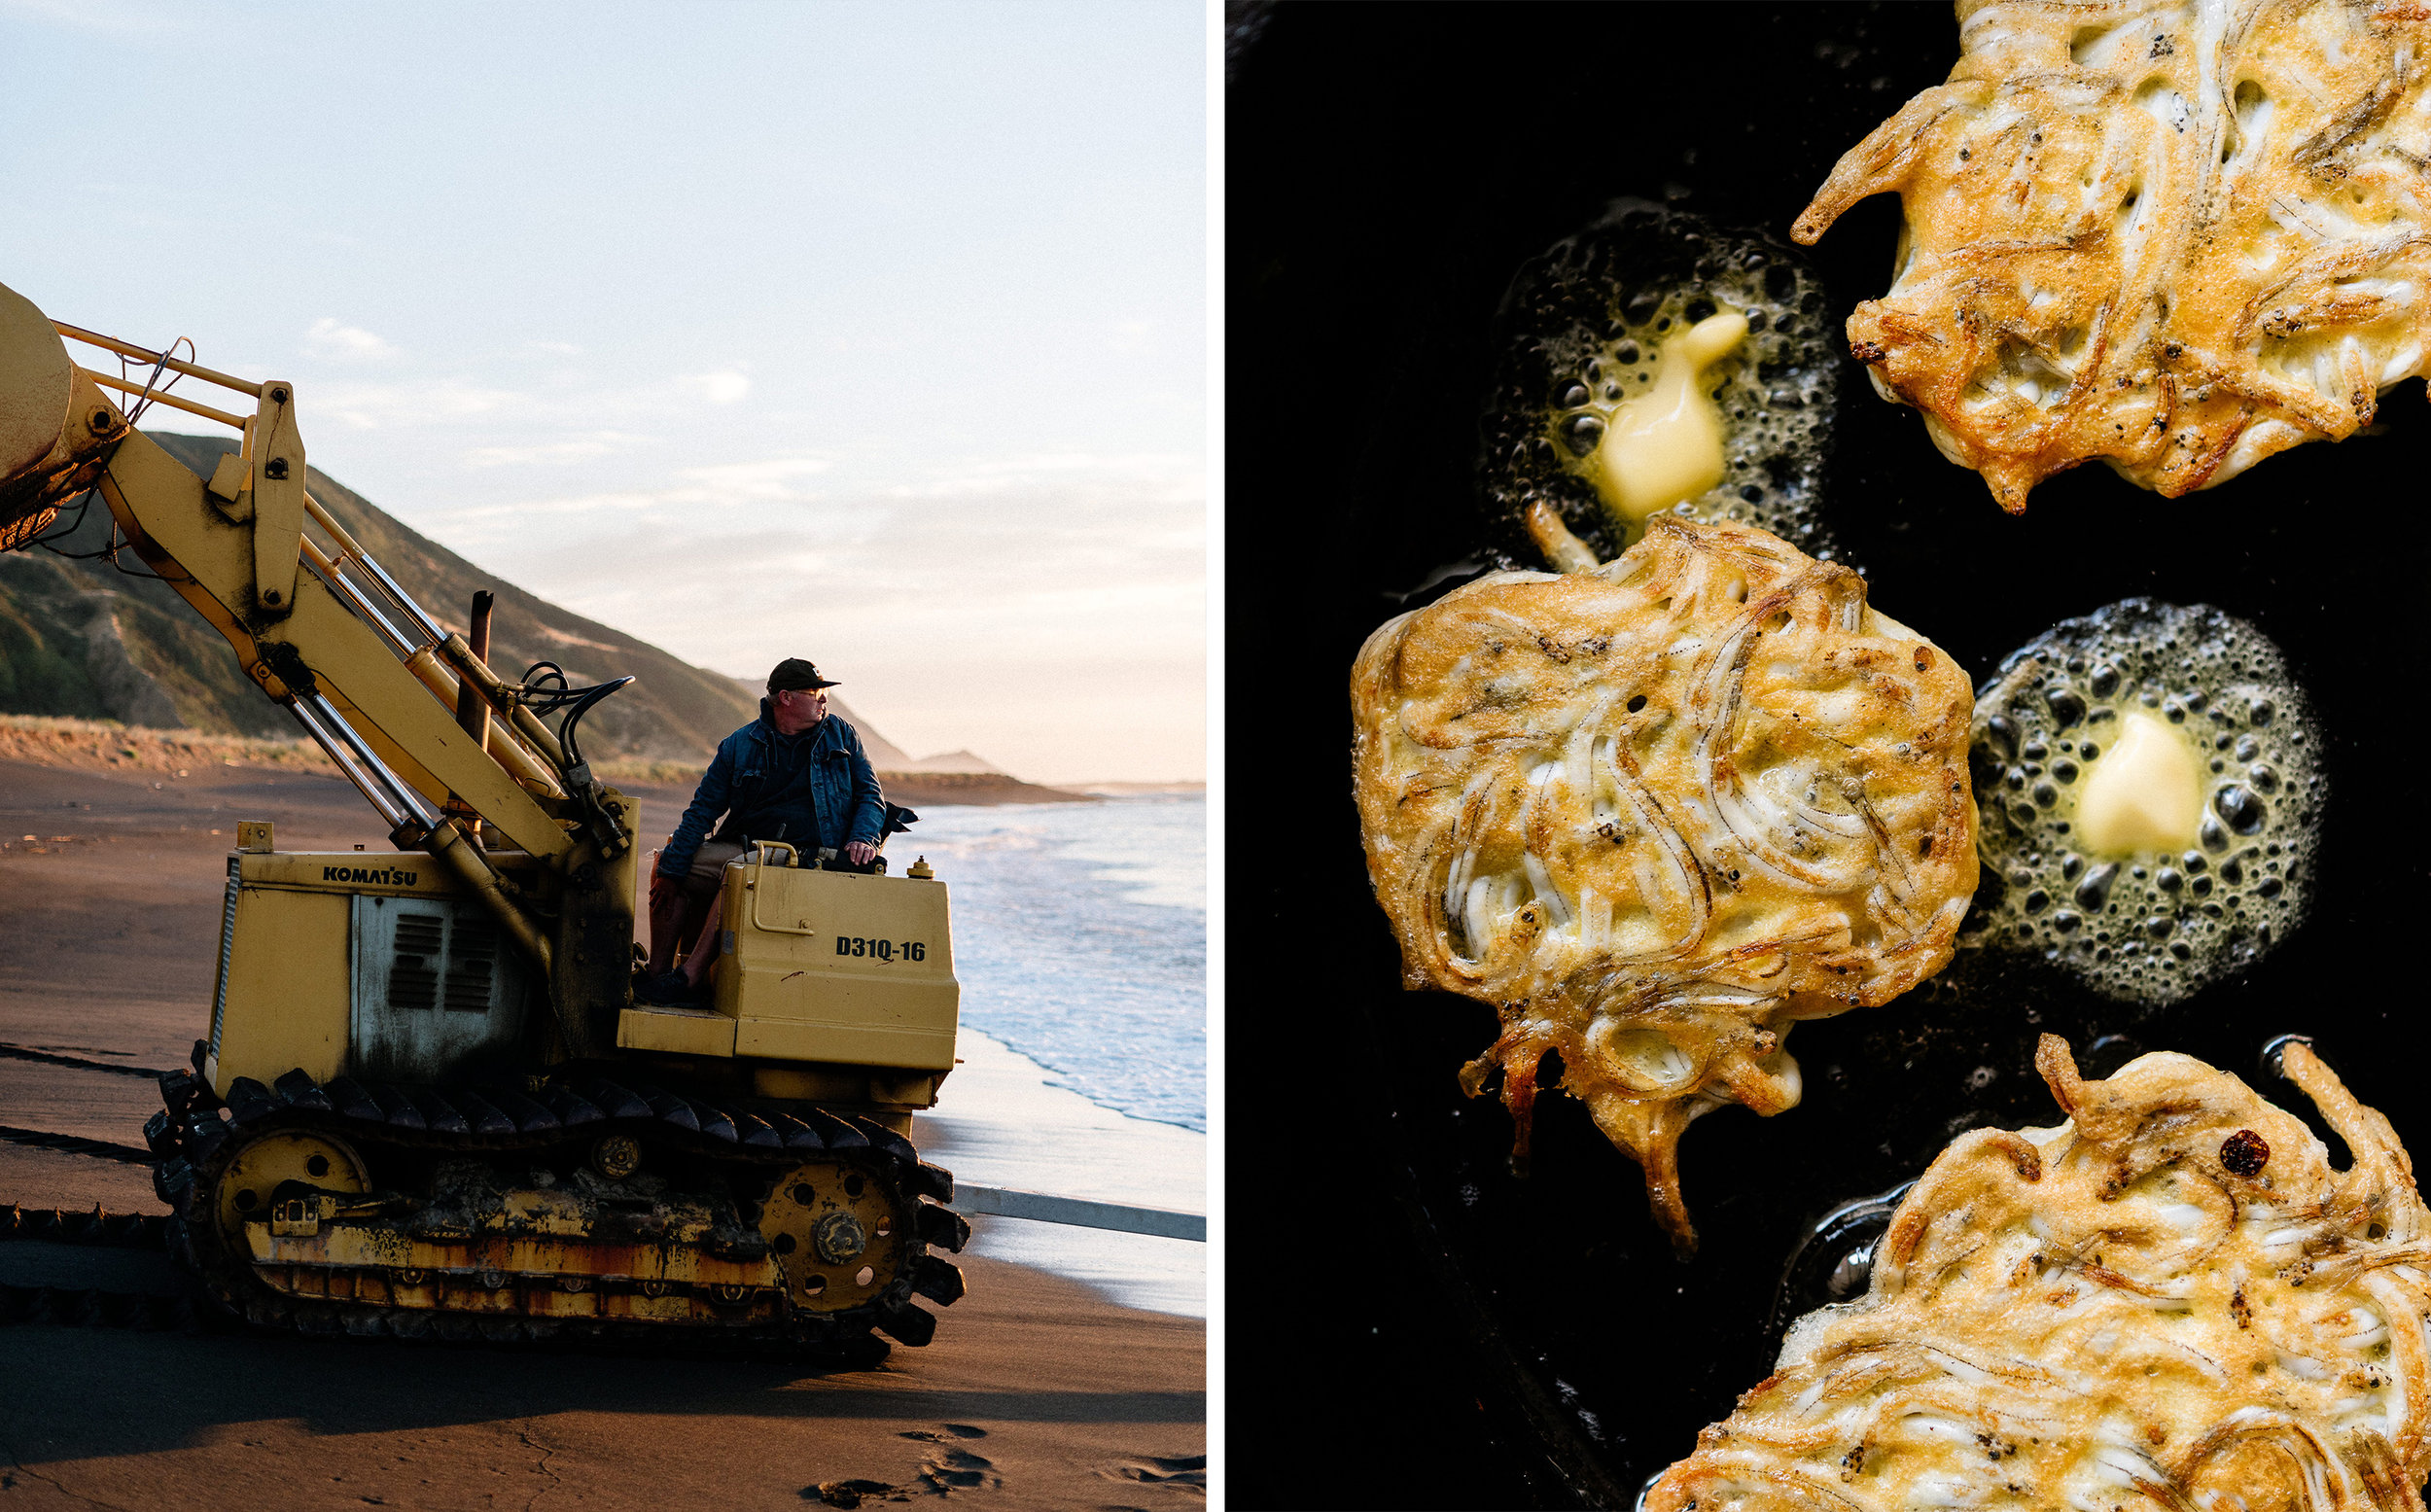 Al-Brown-Eat-Up-NZ-Cookbook-Josh-Griggs-Photographer-Splits-29.jpg